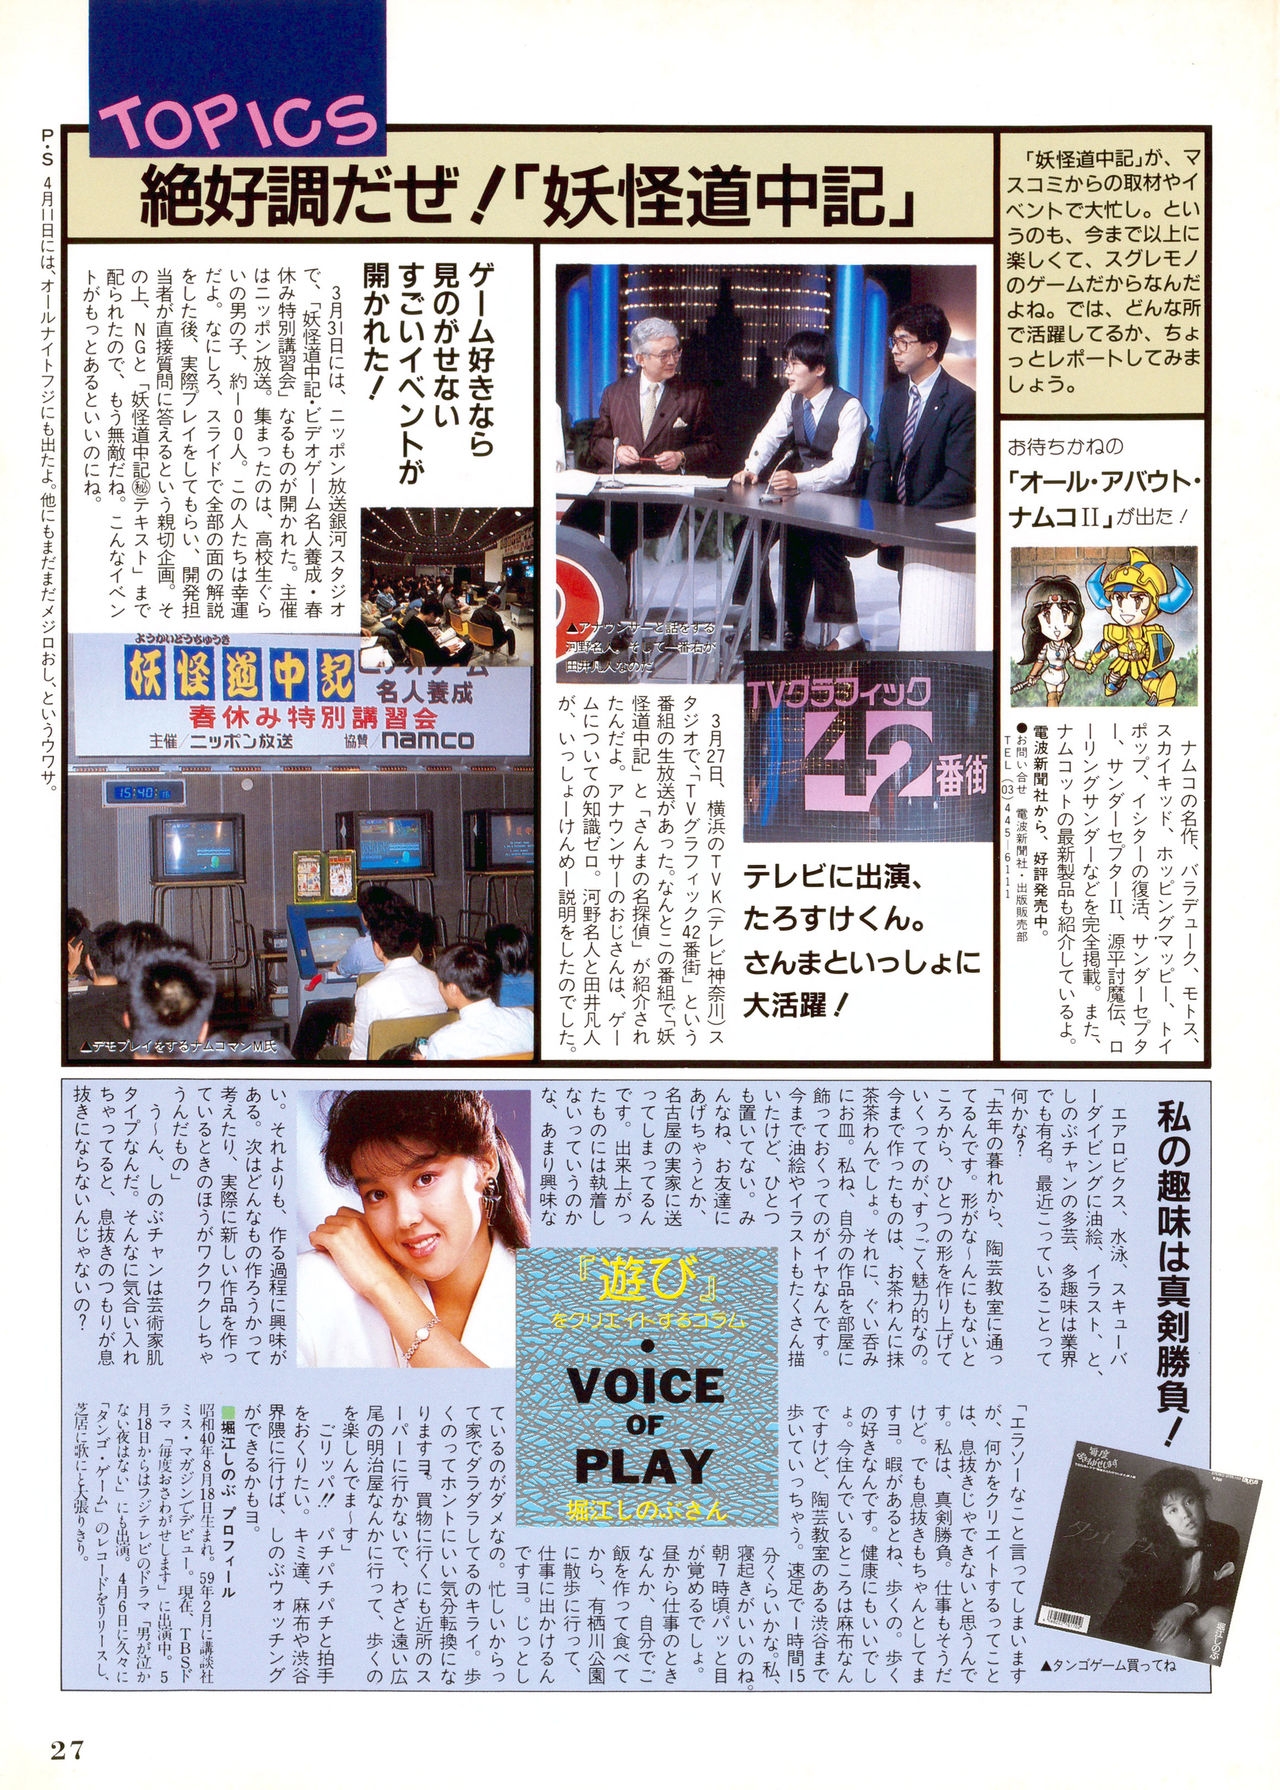 NG Namco Community Magazine 07 26